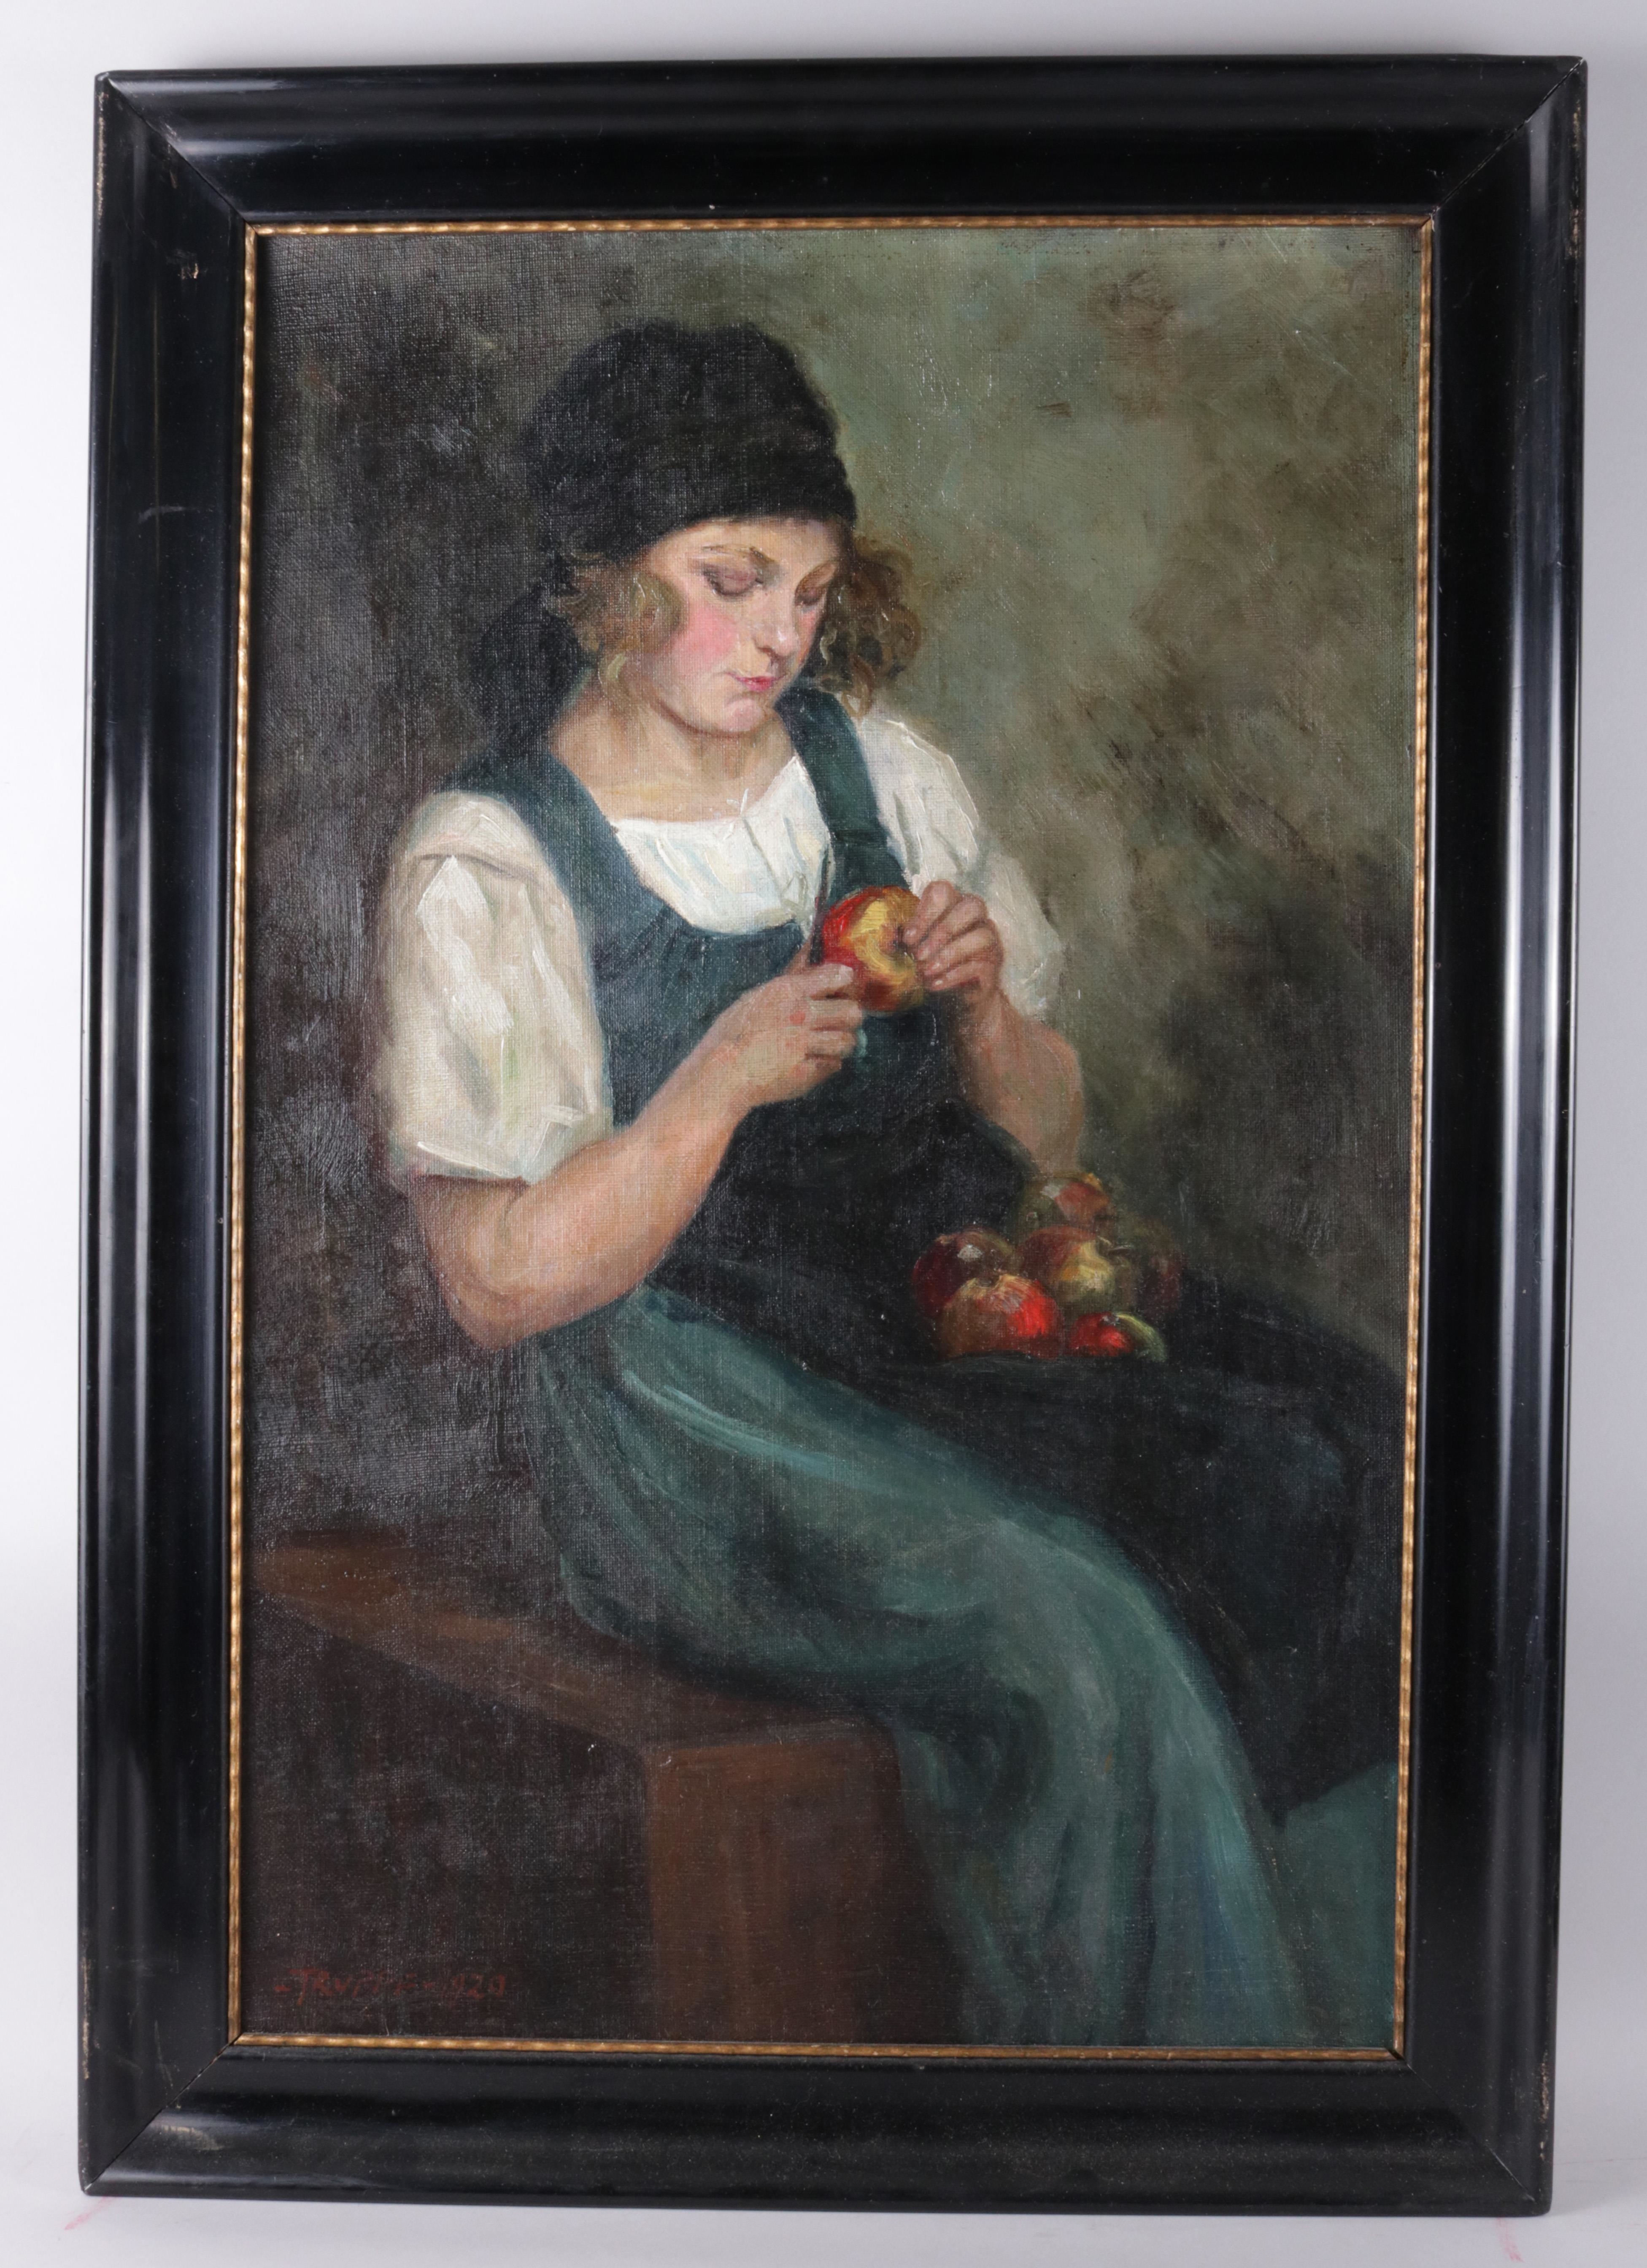 Die Apfelschälerin by Karl Truppe, 1929